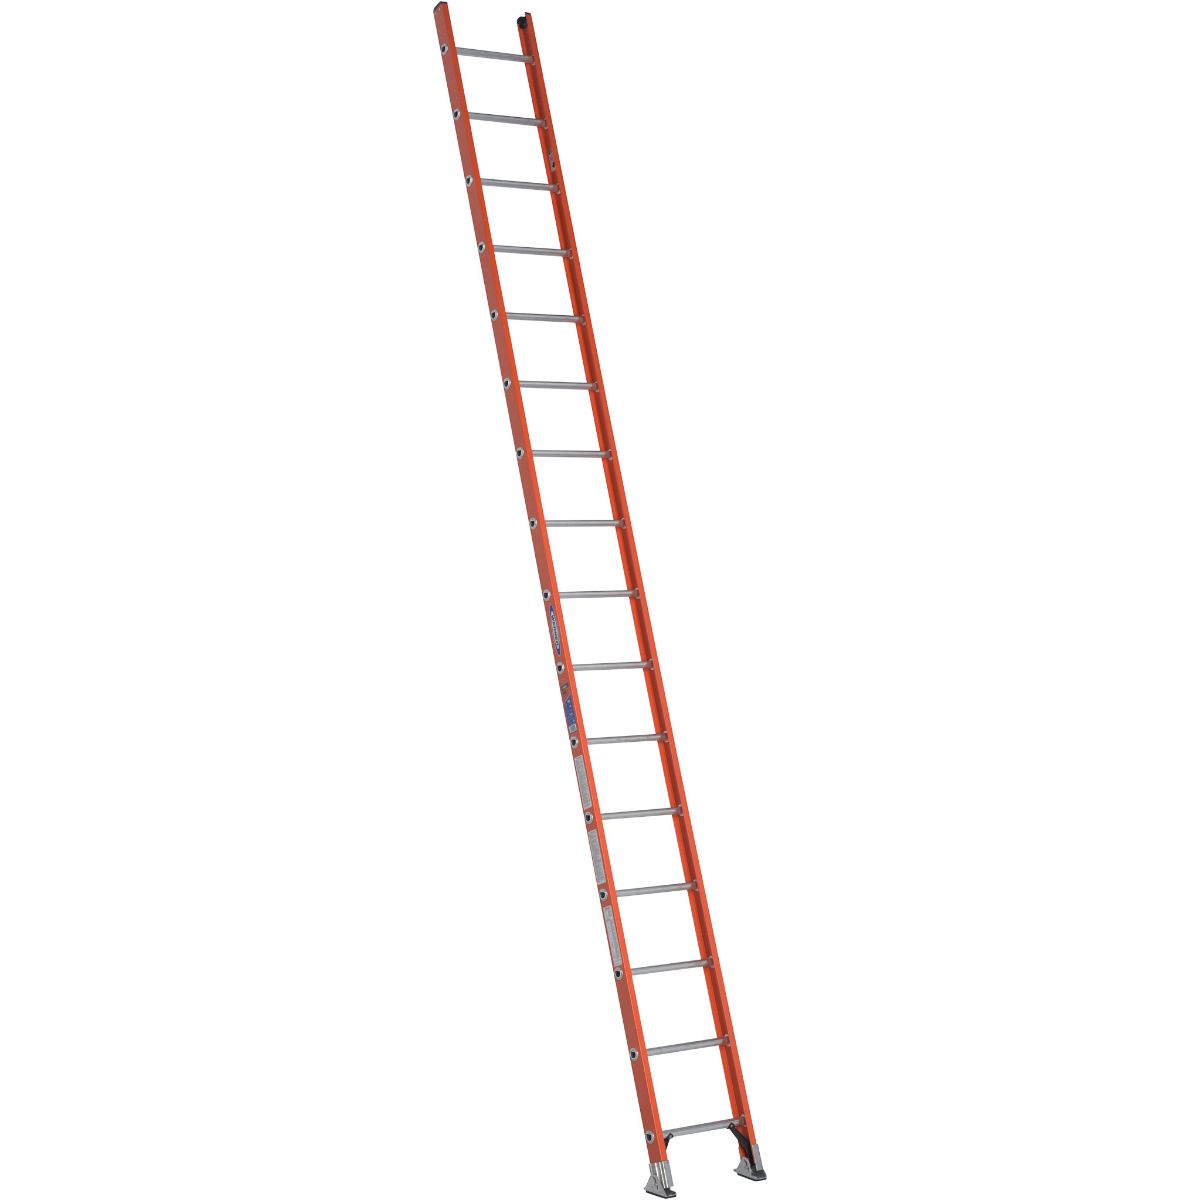 D6216-1 16 Ft. Type Ia Fiberglass D-rung Straight Ladder